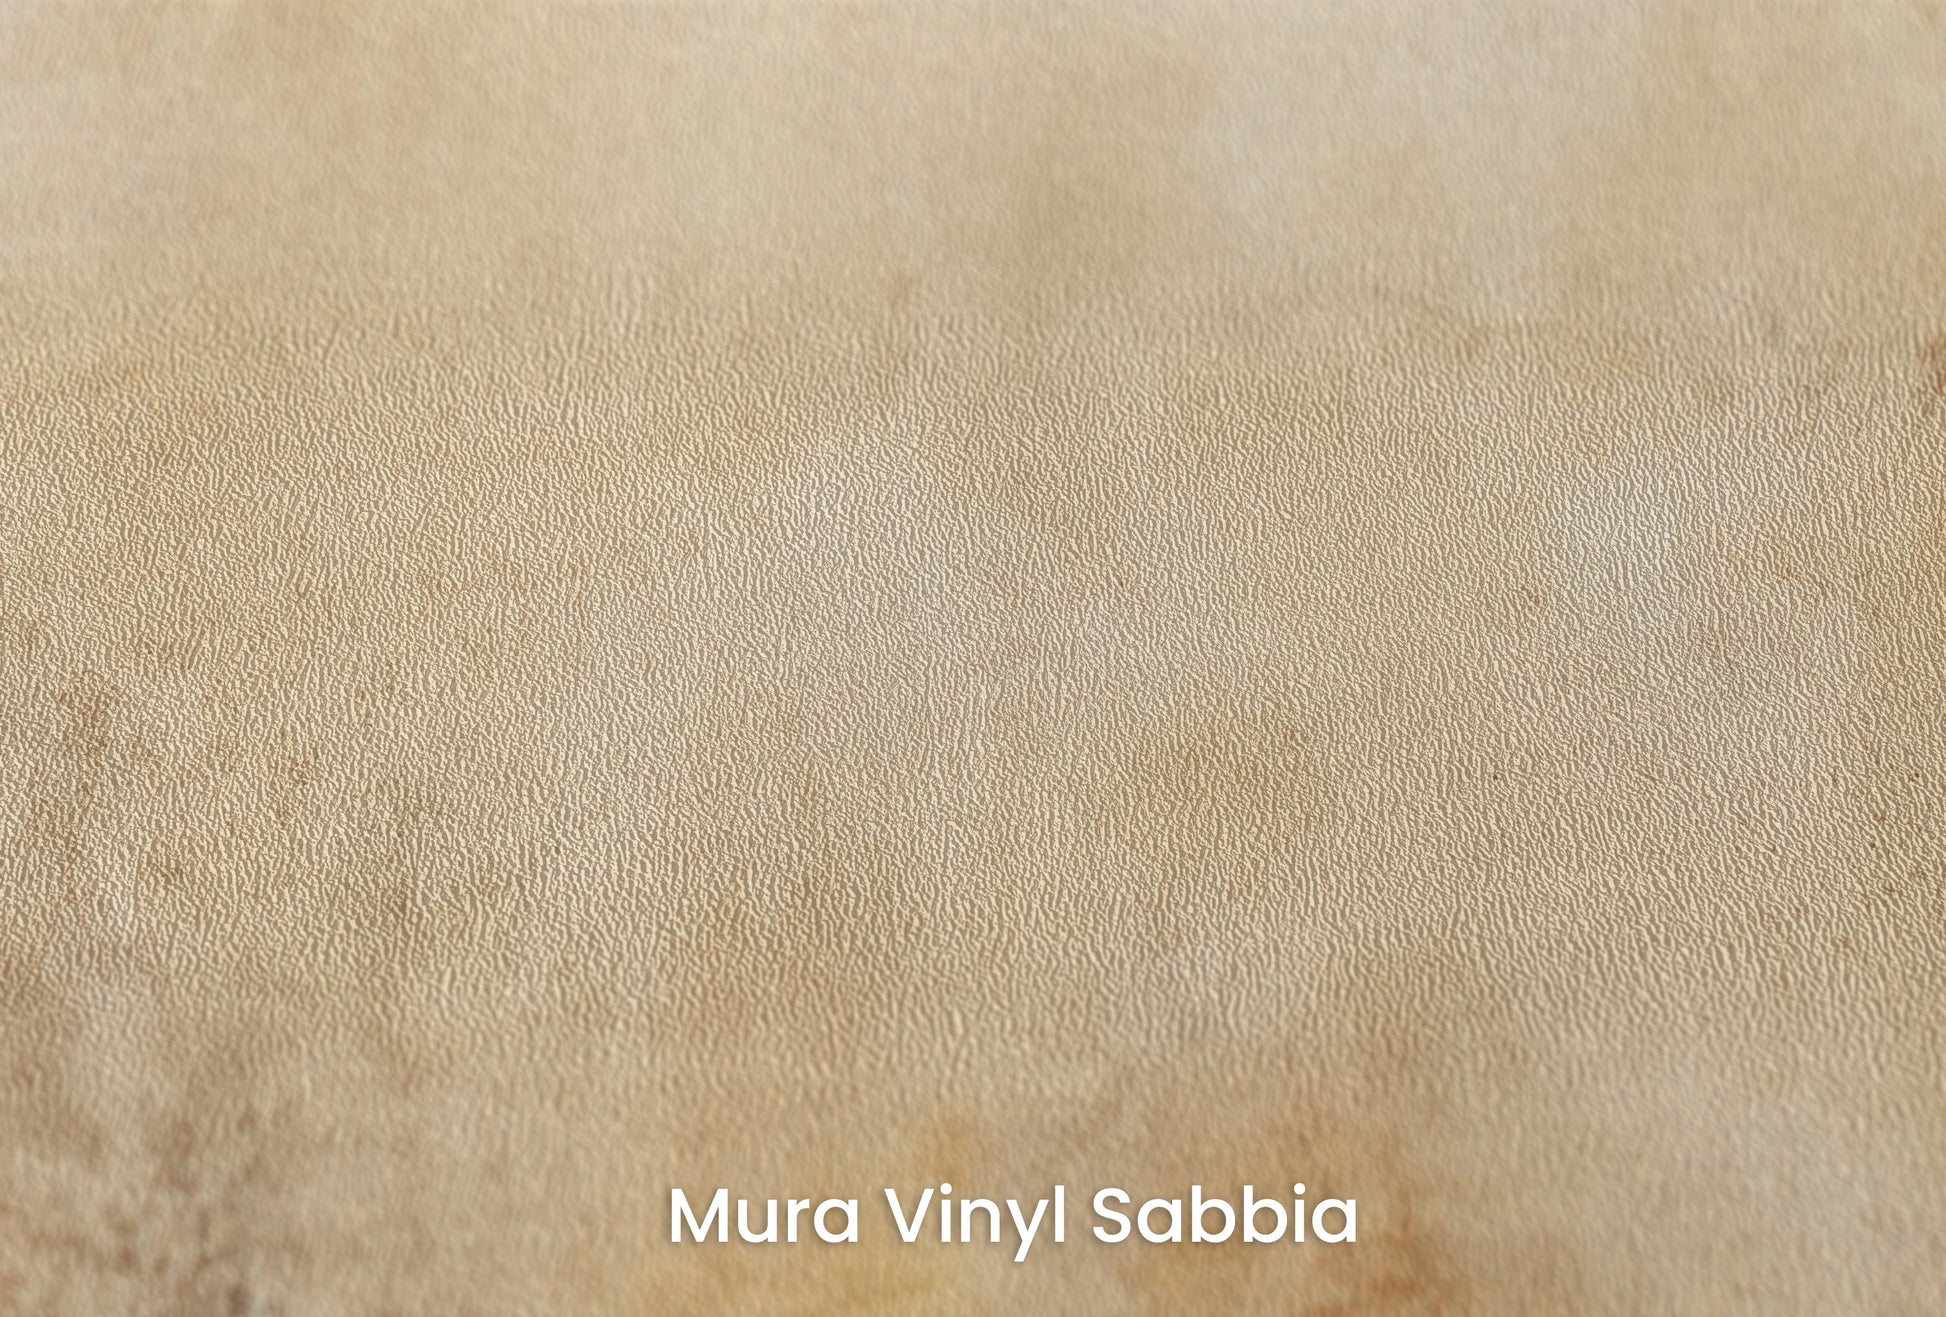 Zbliżenie na artystyczną fototapetę o nazwie AMBIENT OCHRE MIST na podłożu Mura Vinyl Sabbia struktura grubego ziarna piasku.